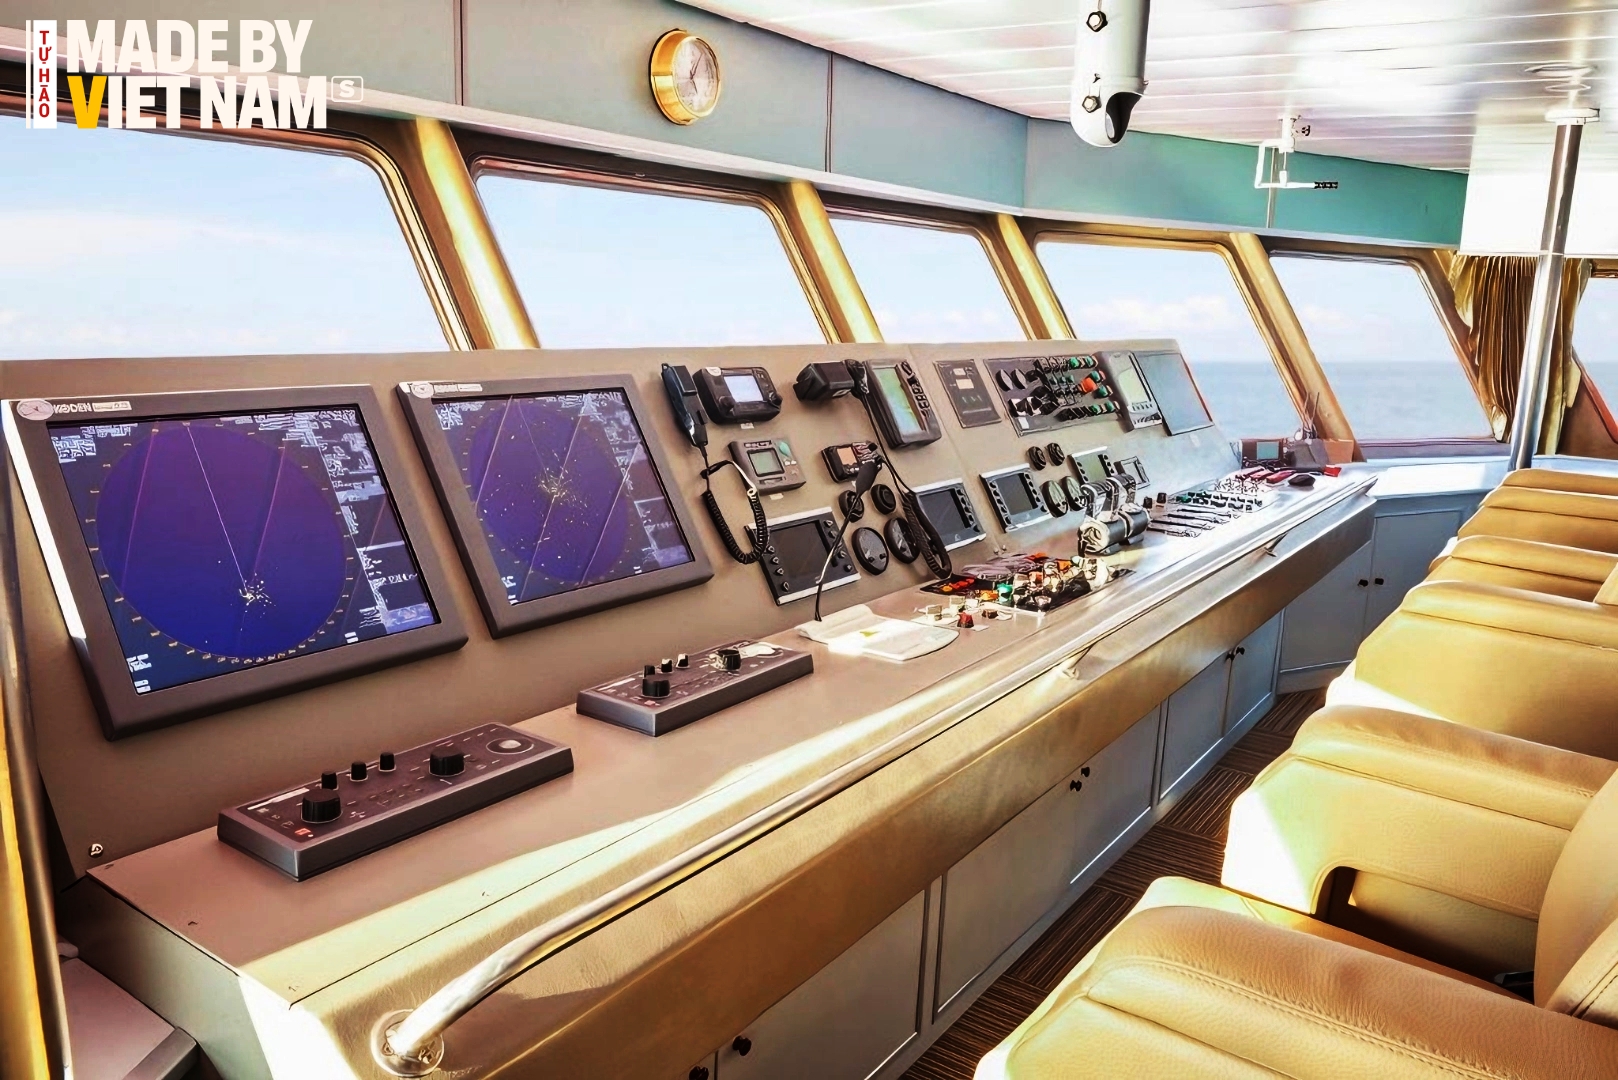 Buồng lái với 3 chỗ ngồi, được lắp hệ thống điều khiển tiên tiến, chống va chạm trên biển cùng màn hình kết nối camera quan sát tất cả các khoang để giúp lái tàu có thể xử lý các tình huống phát sinh - Ảnh: Taucaotoc.vn